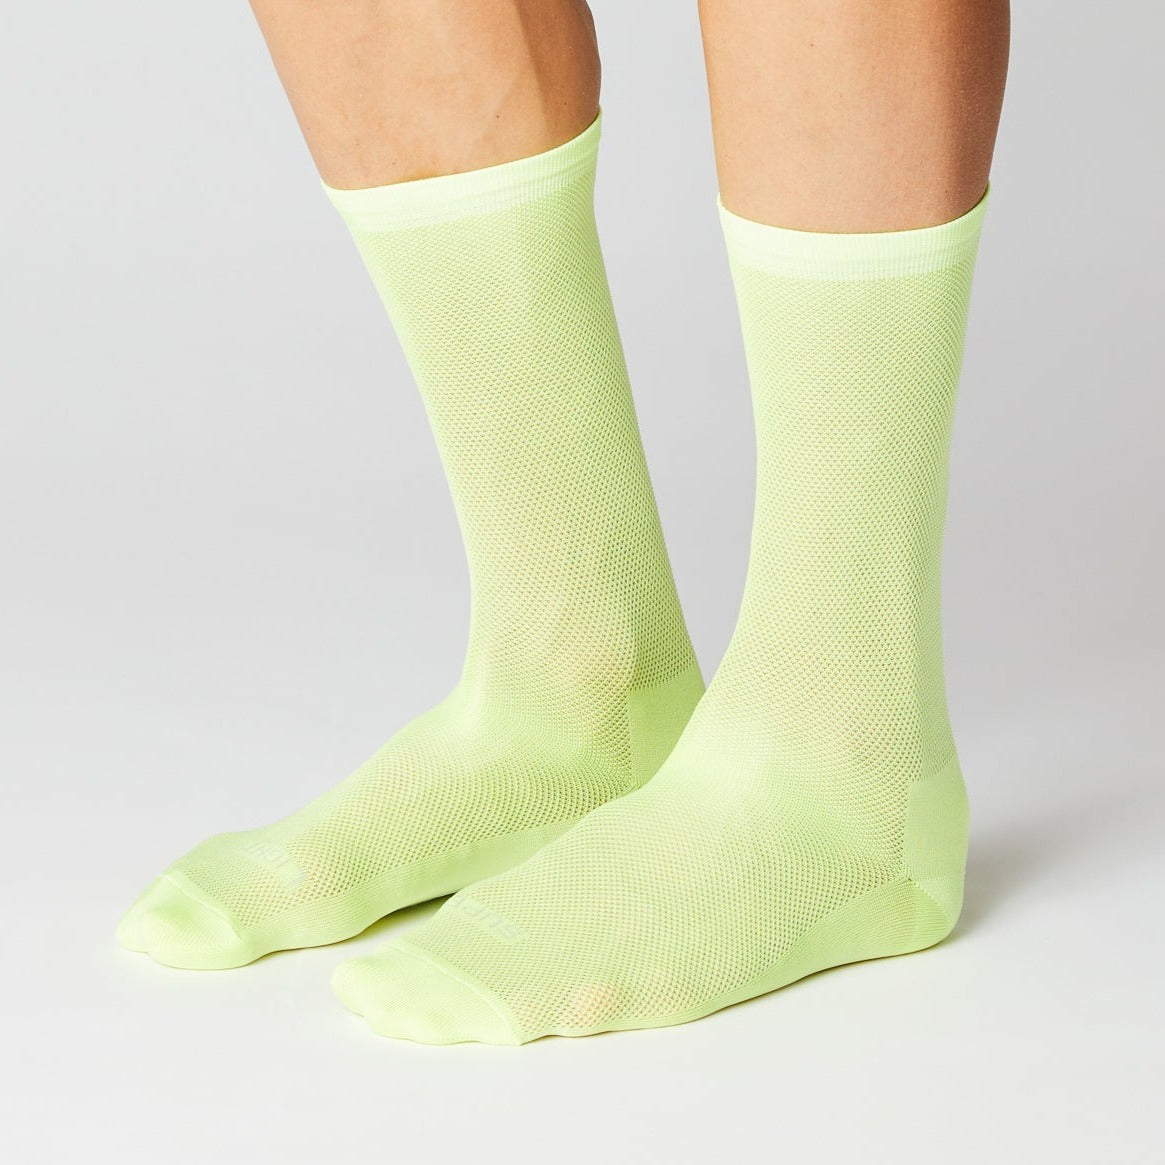 Super Light Socks - Neon